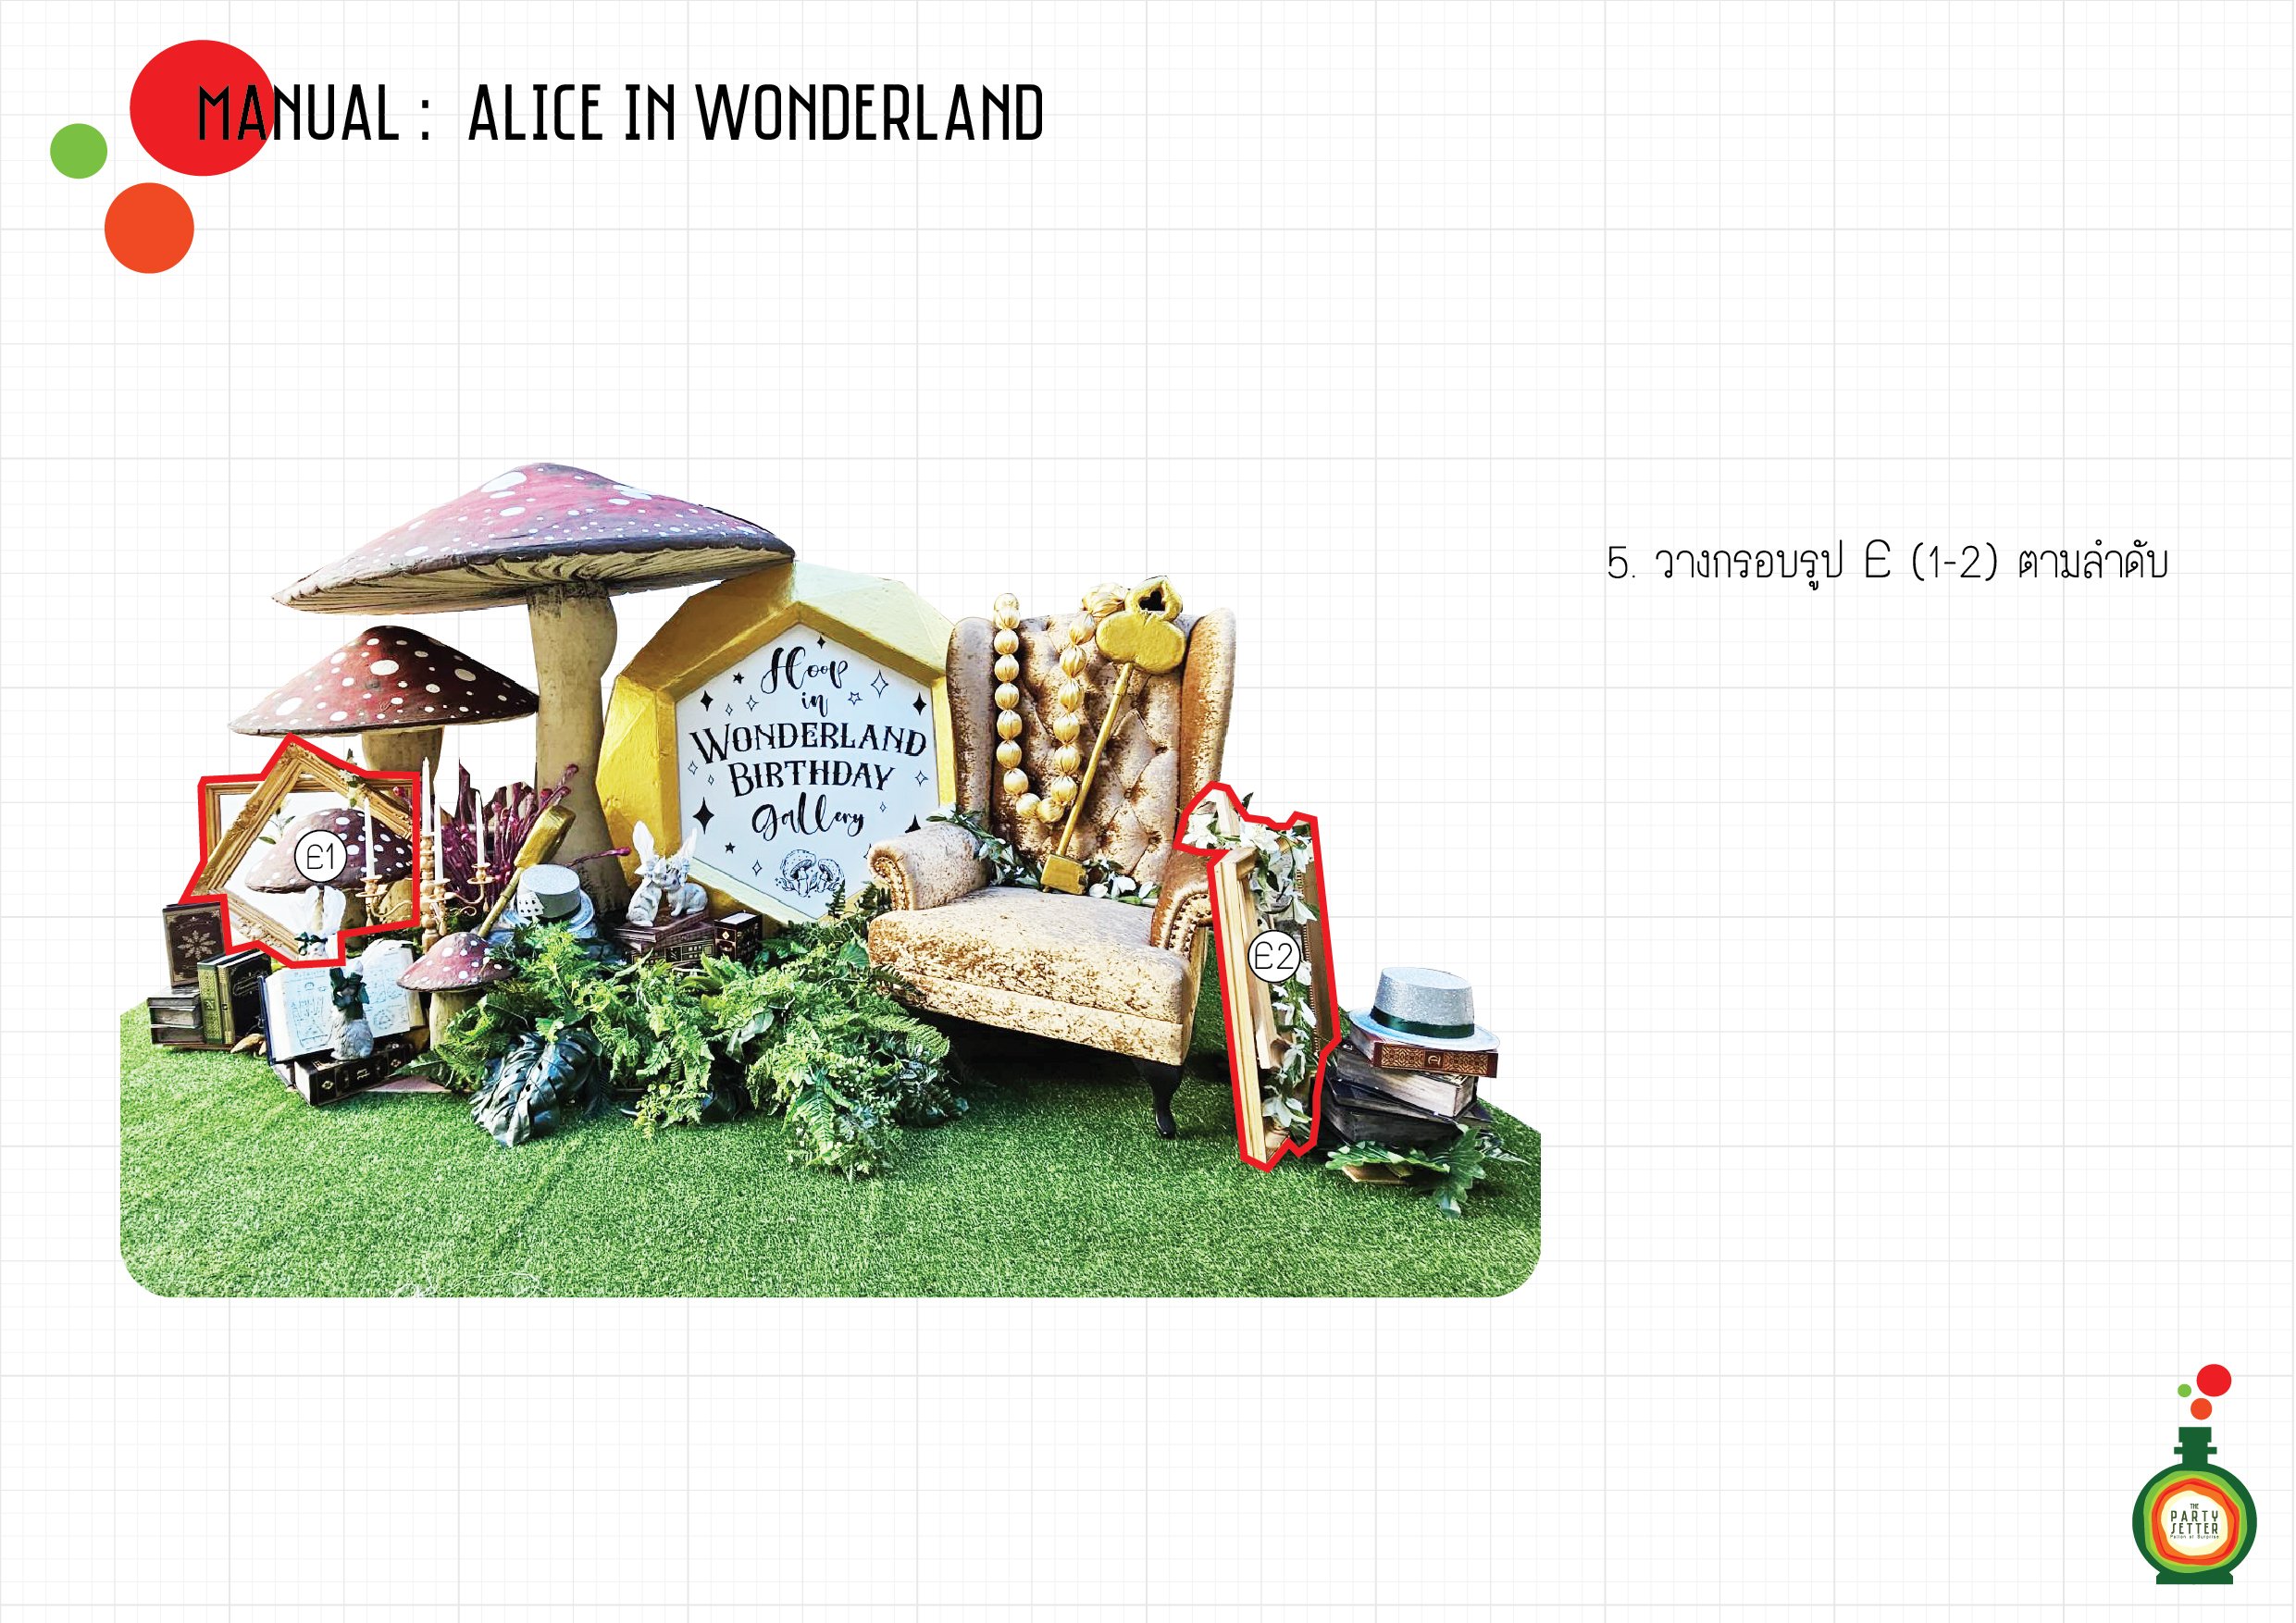 Manual_Alice in Wonderland_05-01.jpg